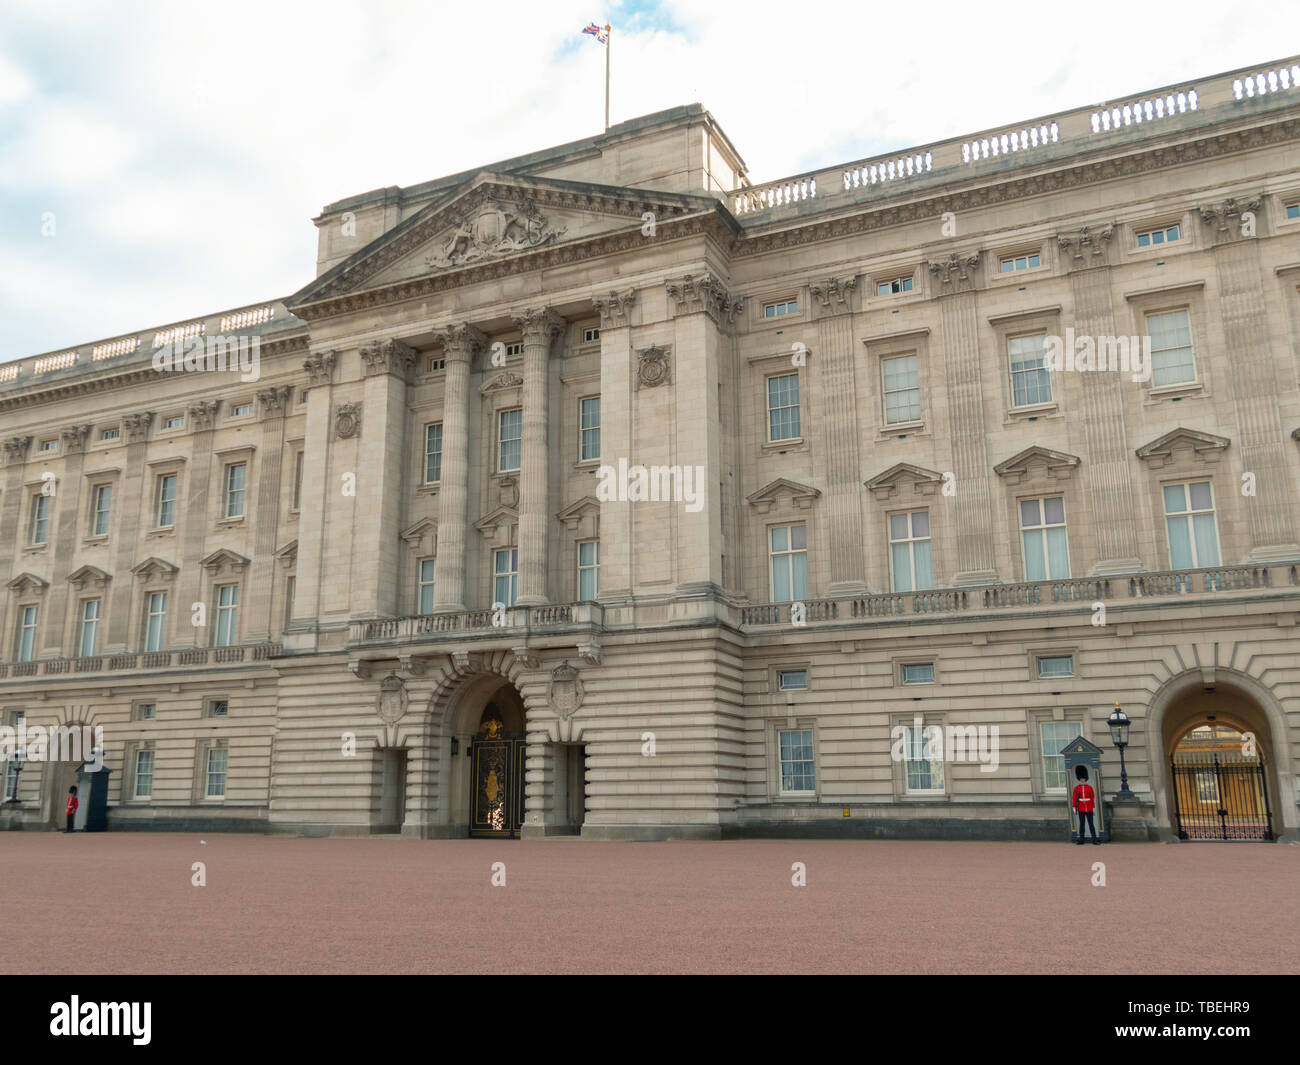 Londres, UK - Avril 2019 : l'imprimeur de la garde à Buckingham Palace, la résidence officielle de la Reine d'Angleterre. Palais de Buckingham Solider Banque D'Images